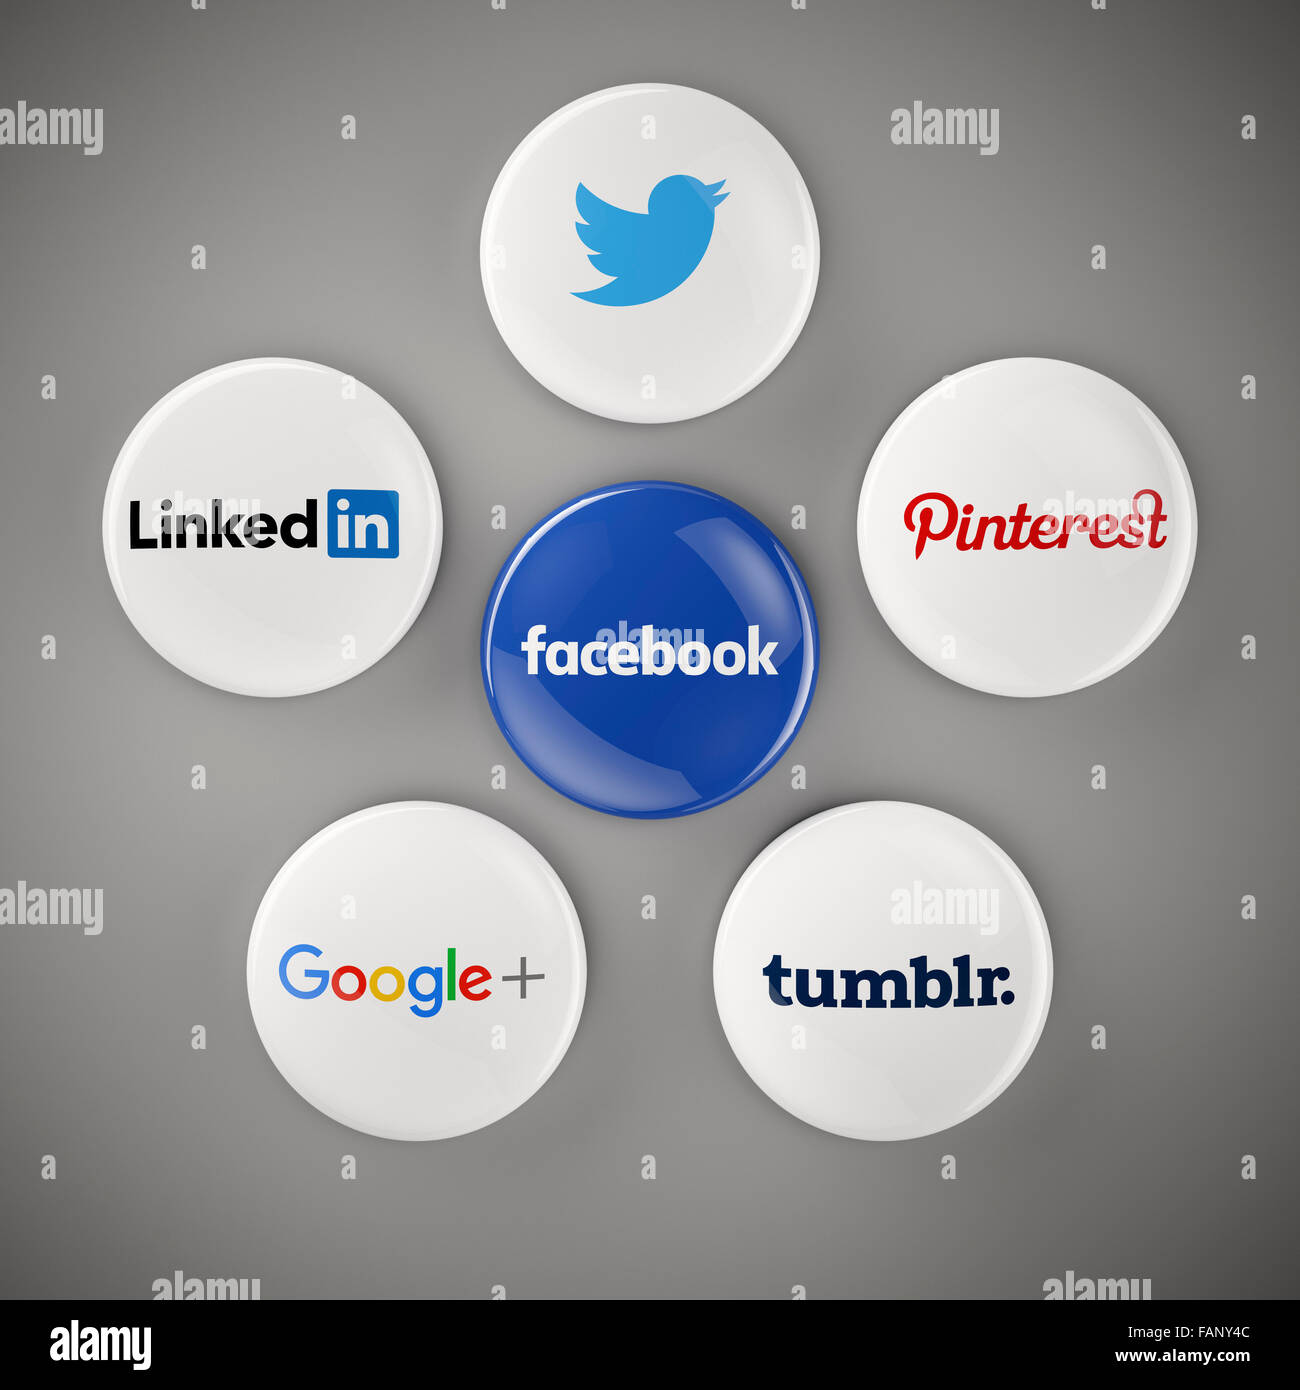 Facebook, Twitter, LinkedIn, Pinterest, Google +, Tumblr, icônes, boutons, des sites de réseaux sociaux Banque D'Images